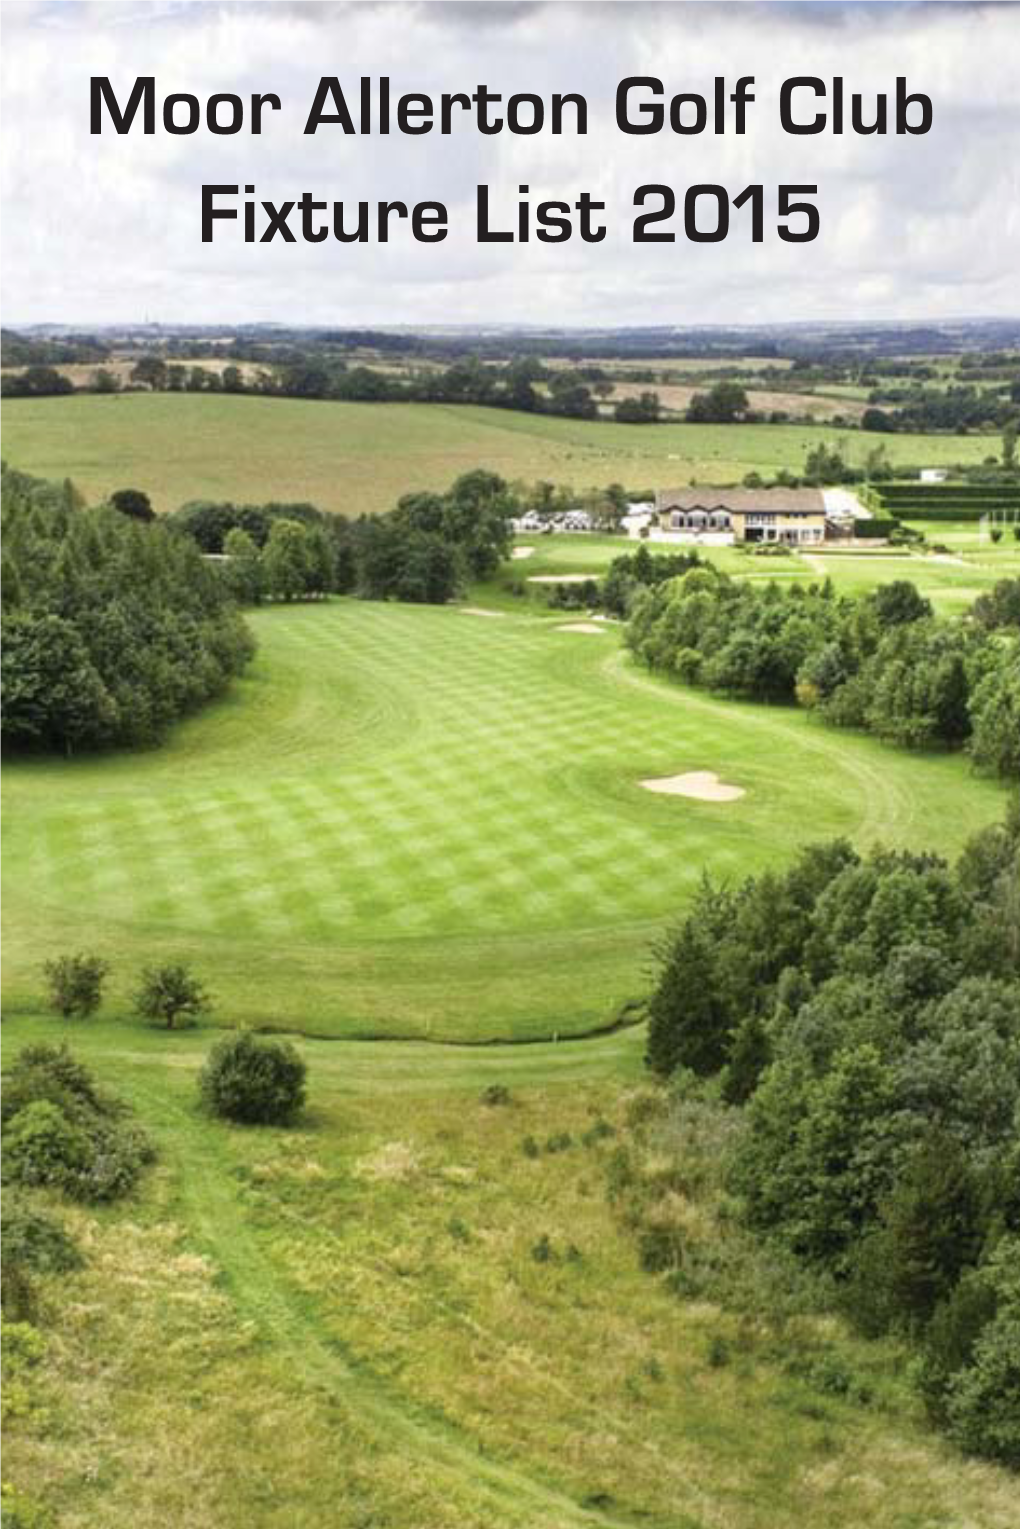 Moor Allerton Golf Club Fixture List 2015 Moor Allerton Golf Club